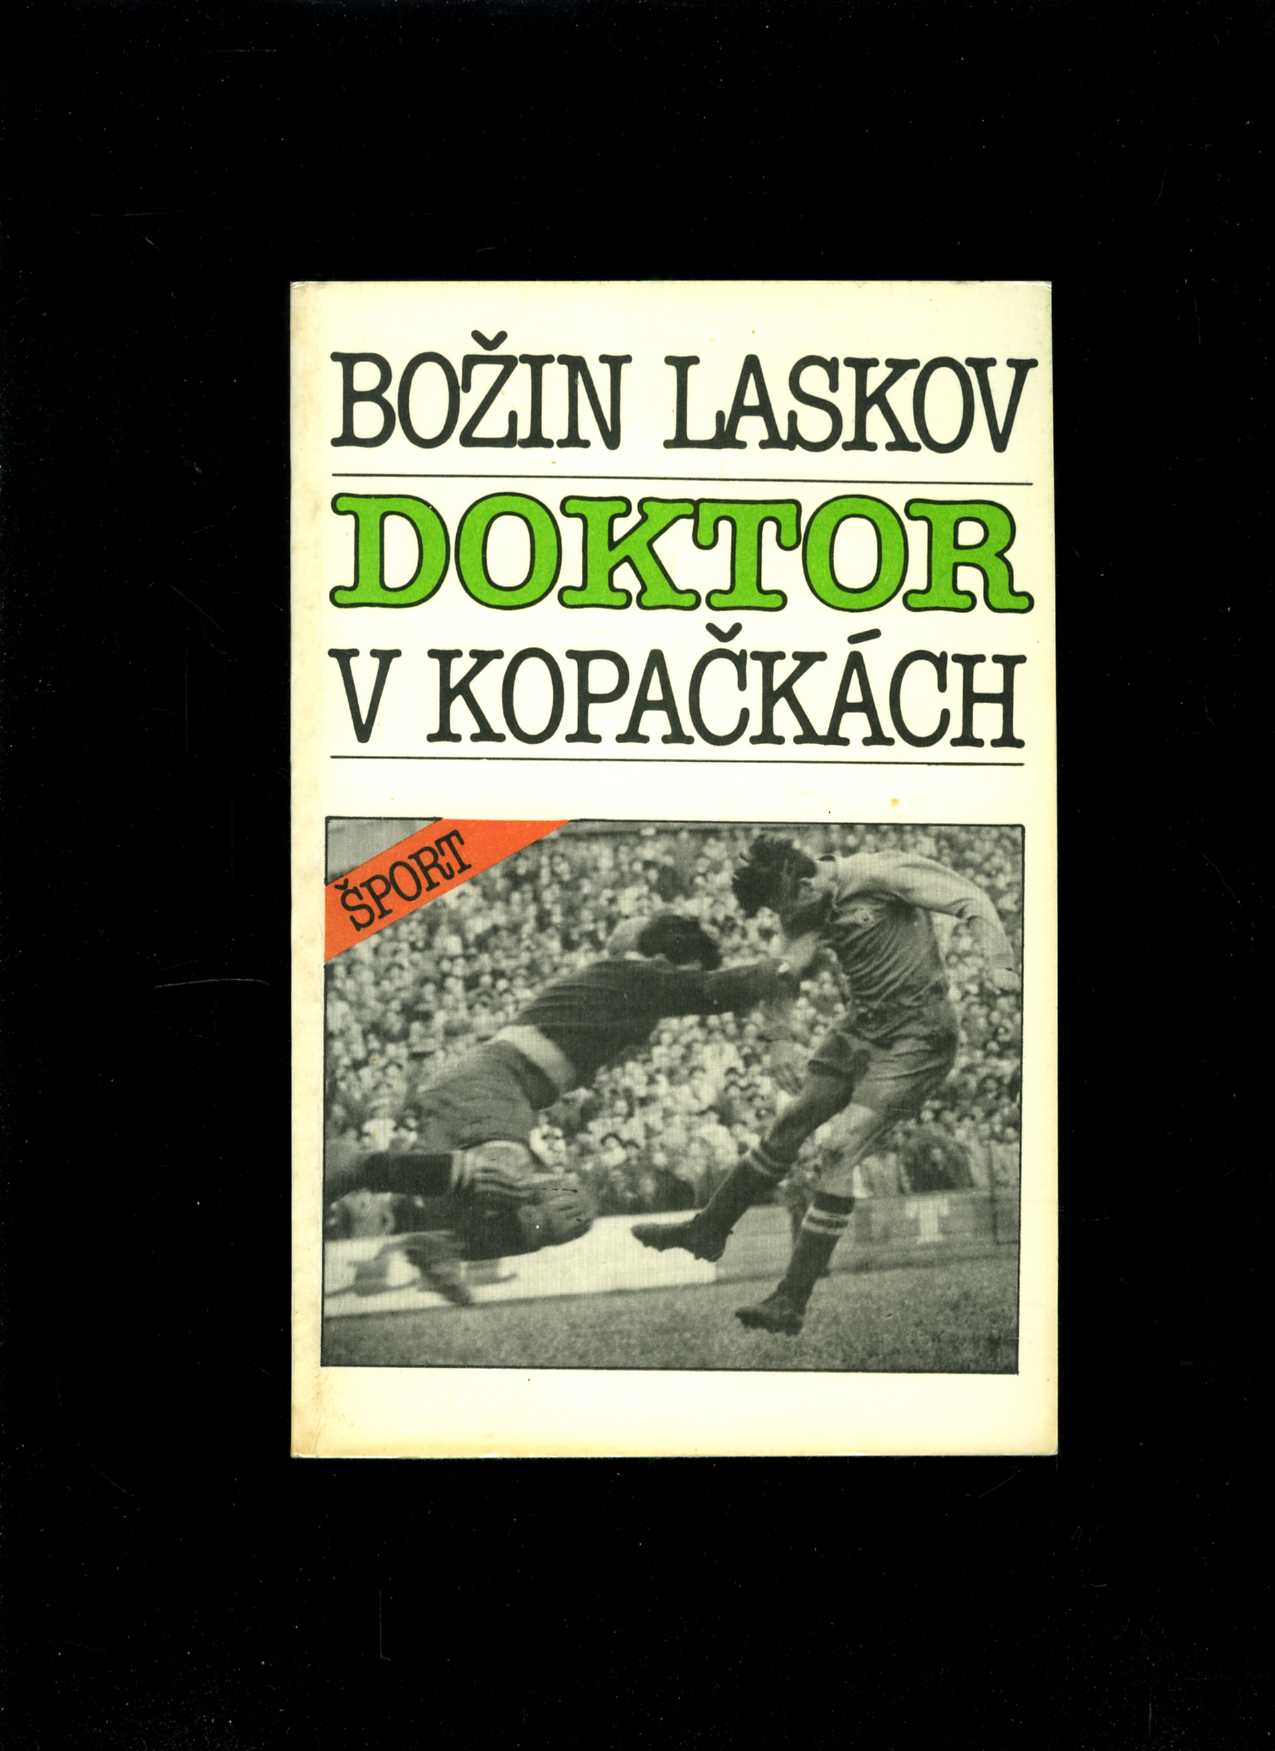 Doktor v kopačkách (Božin Laskov)